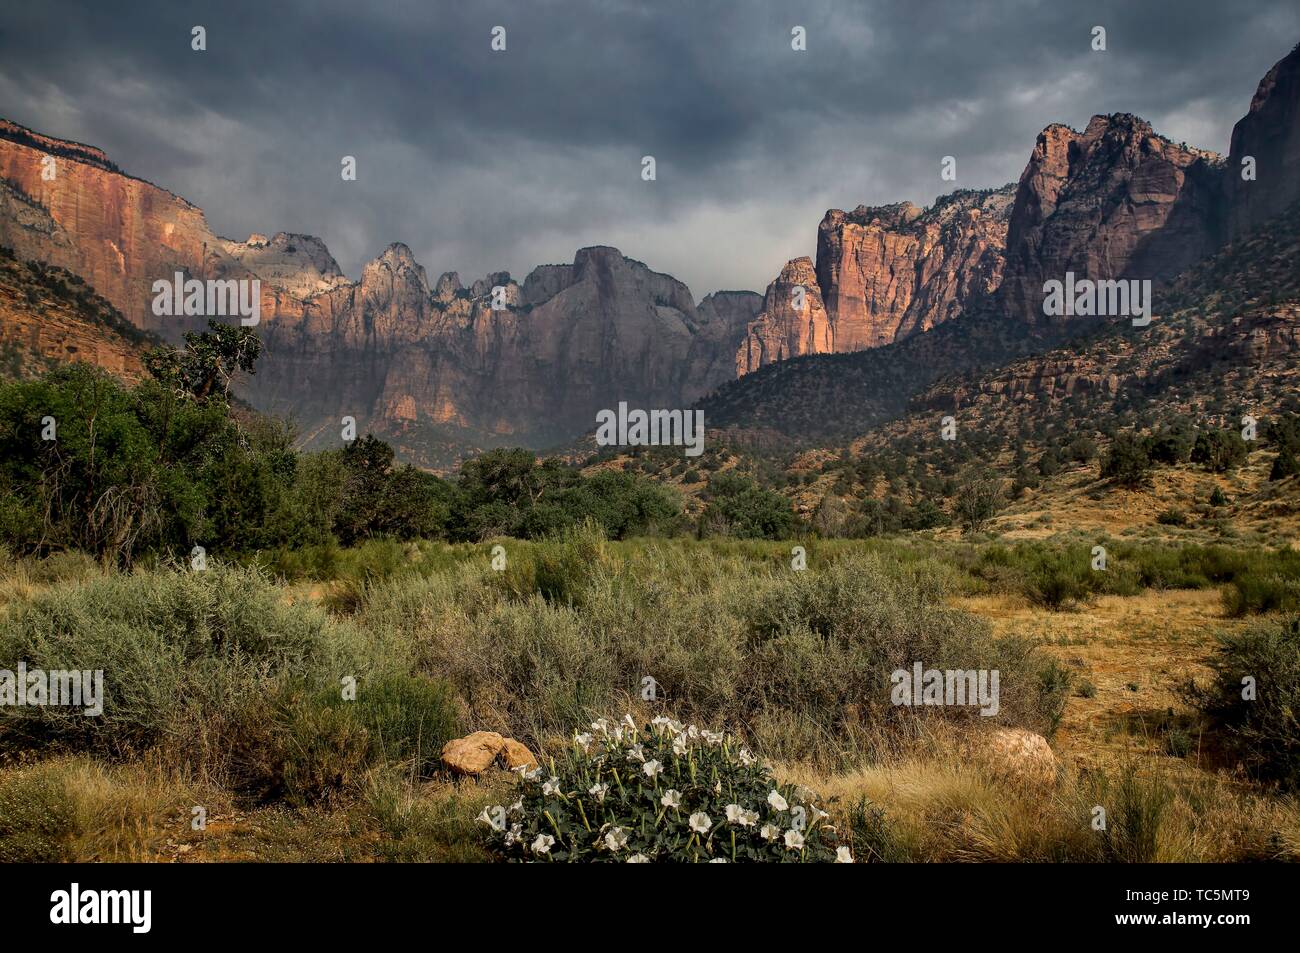 Monsoonal Feuchtigkeit hat, während der heißen Sommer in den Zion National Park, Utah angekommen. Stockfoto